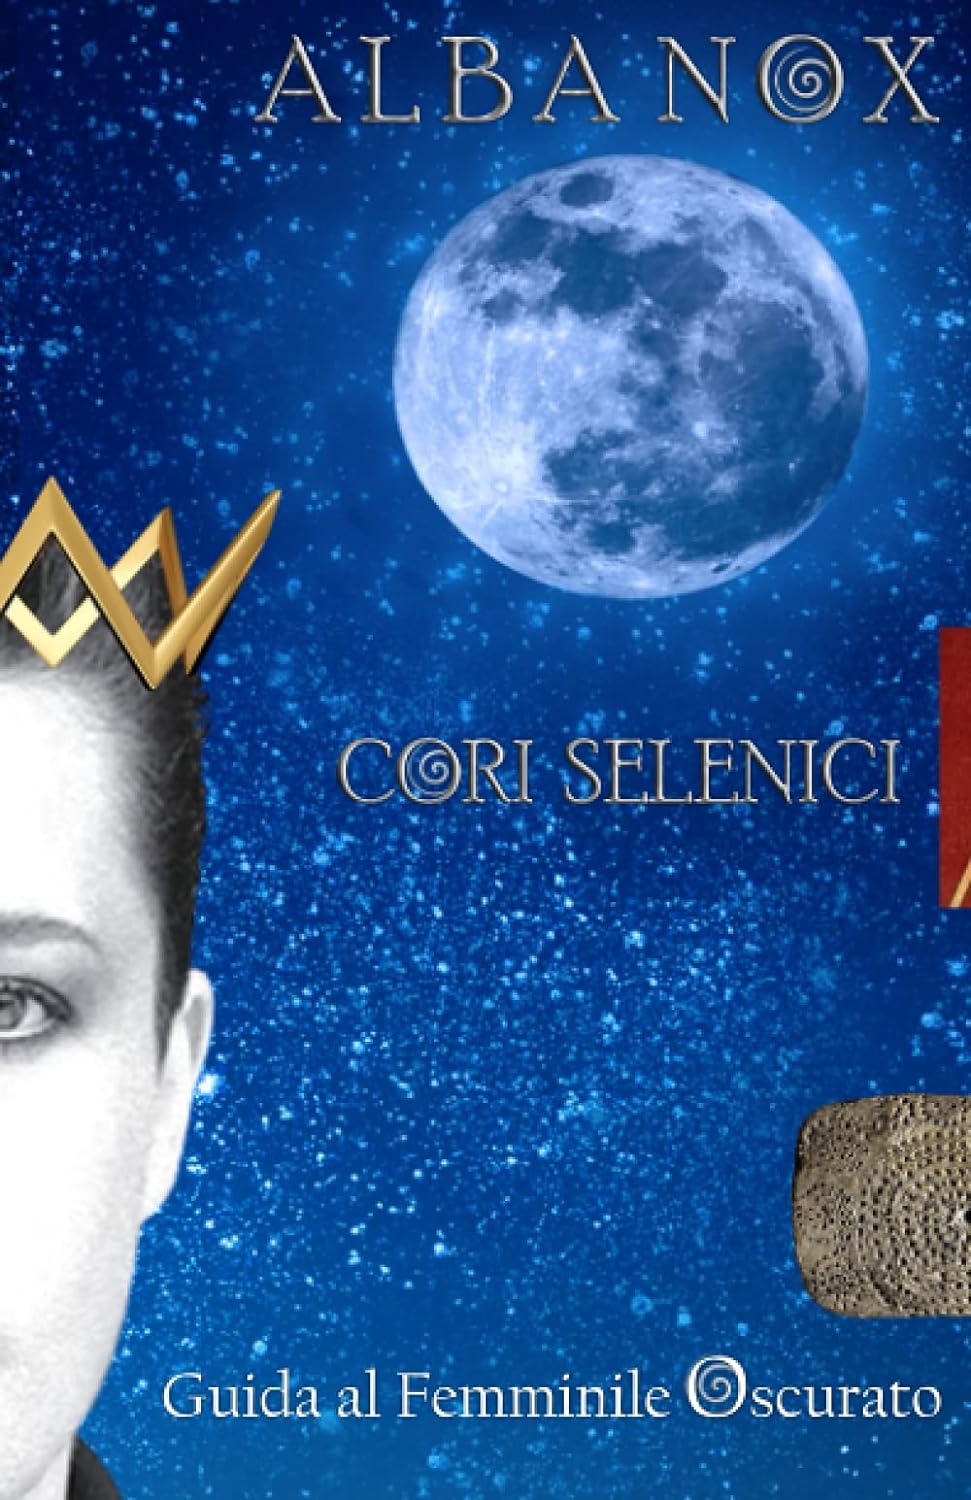 Alba Nox - Cori Selenici: Il Femminile Oscurato